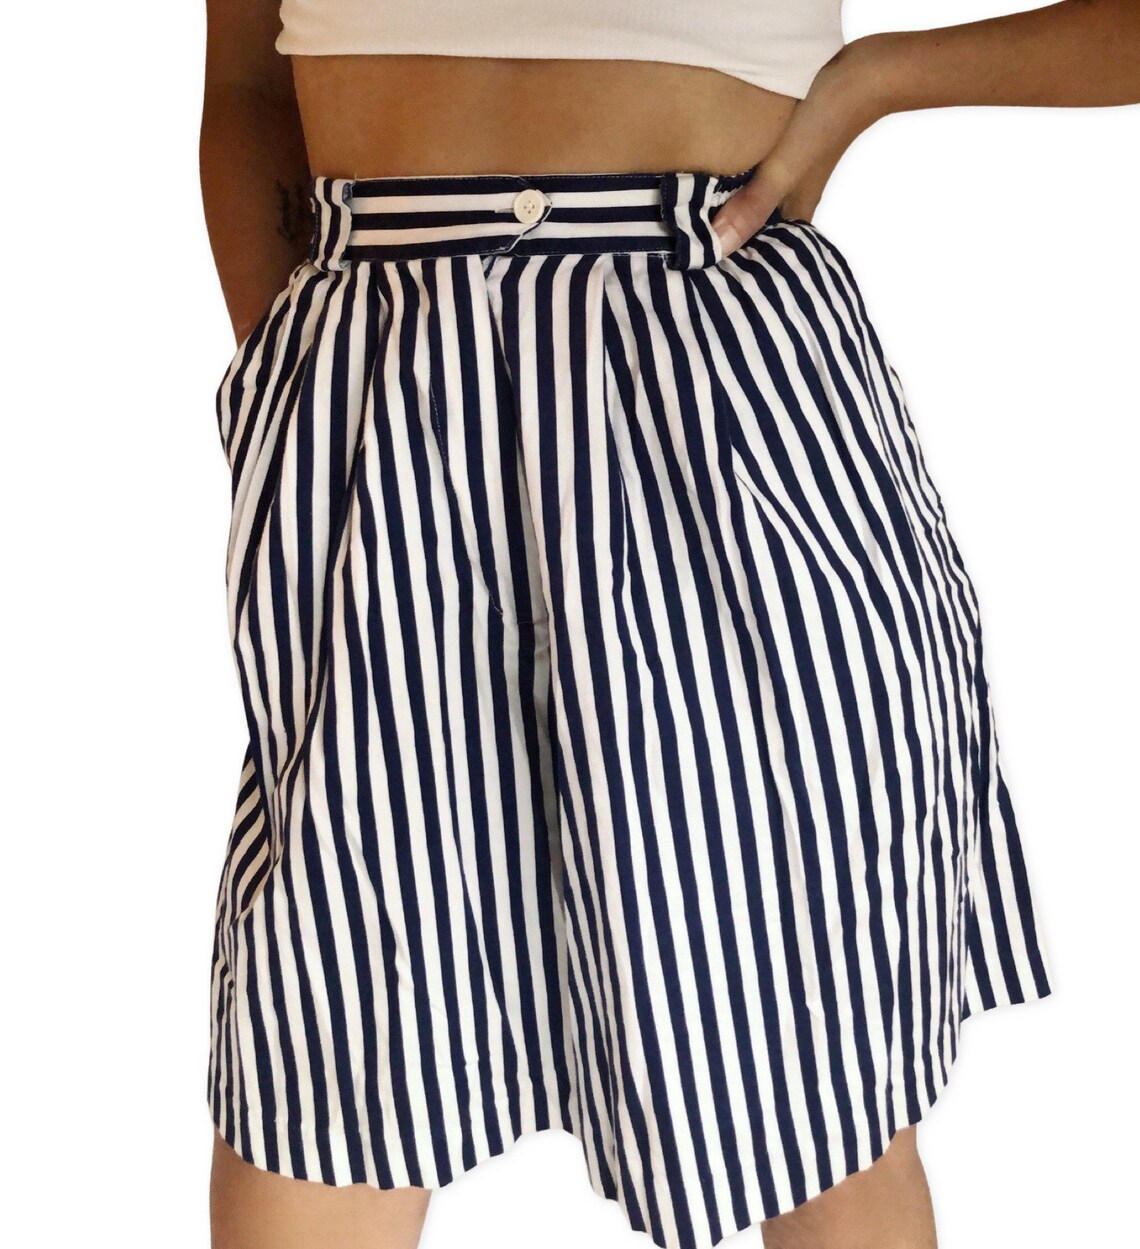 Vintage striped Bermuda shorts 23 | Etsy